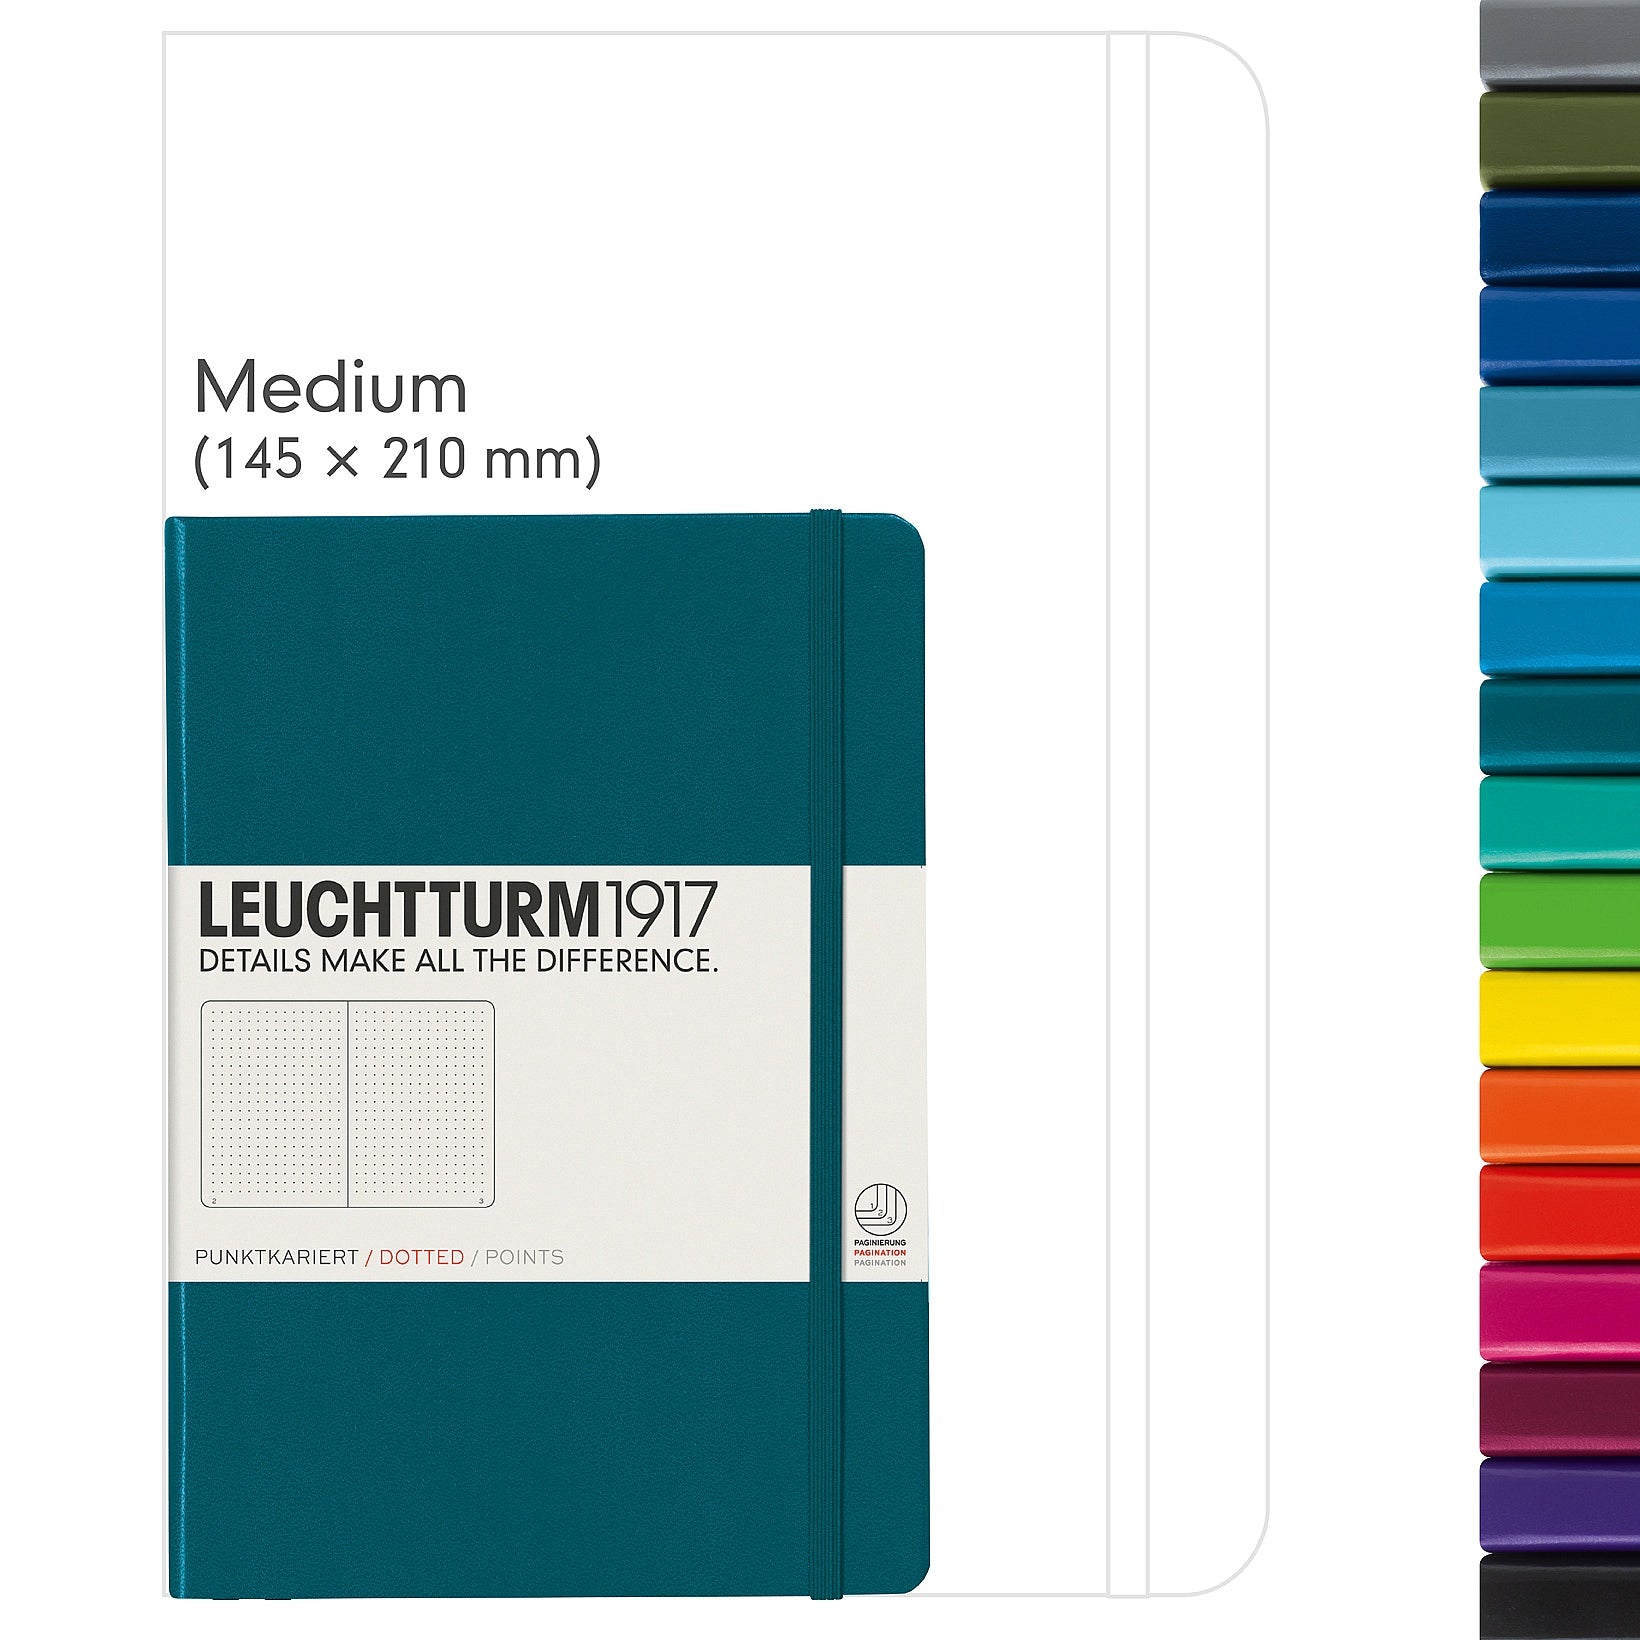 Leuchtturm1917 Notebook Medium (A5) Dotted Fresh Green - Pencraft the boutique